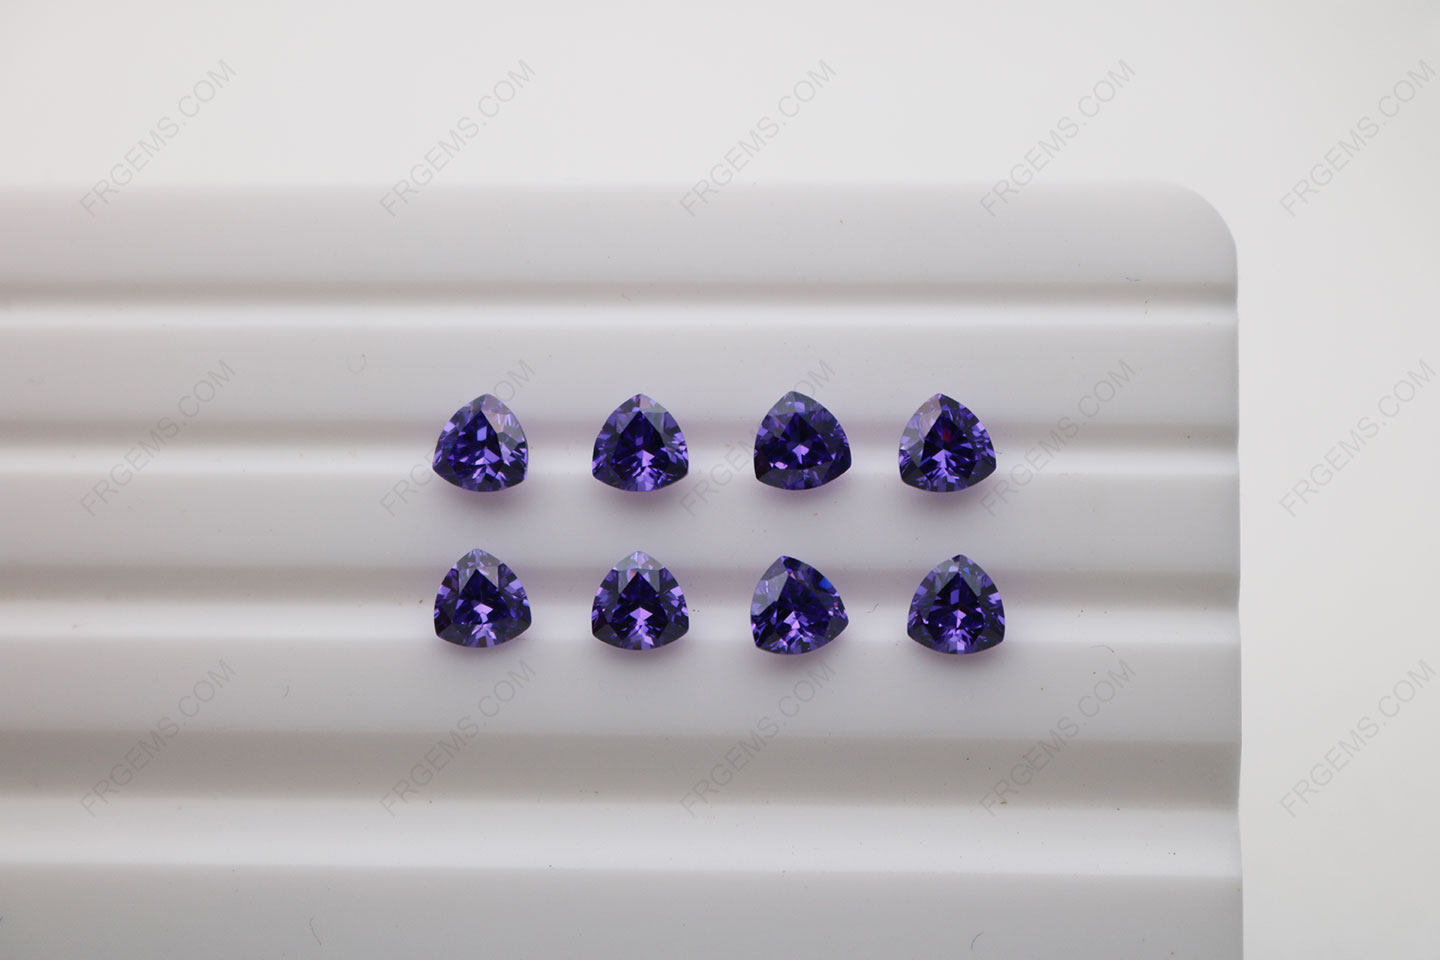 Cubic_Zirconia_Violet_Trillion_Shape_Diamond_faceted_cut_5x5mm_stones_IMG_4909